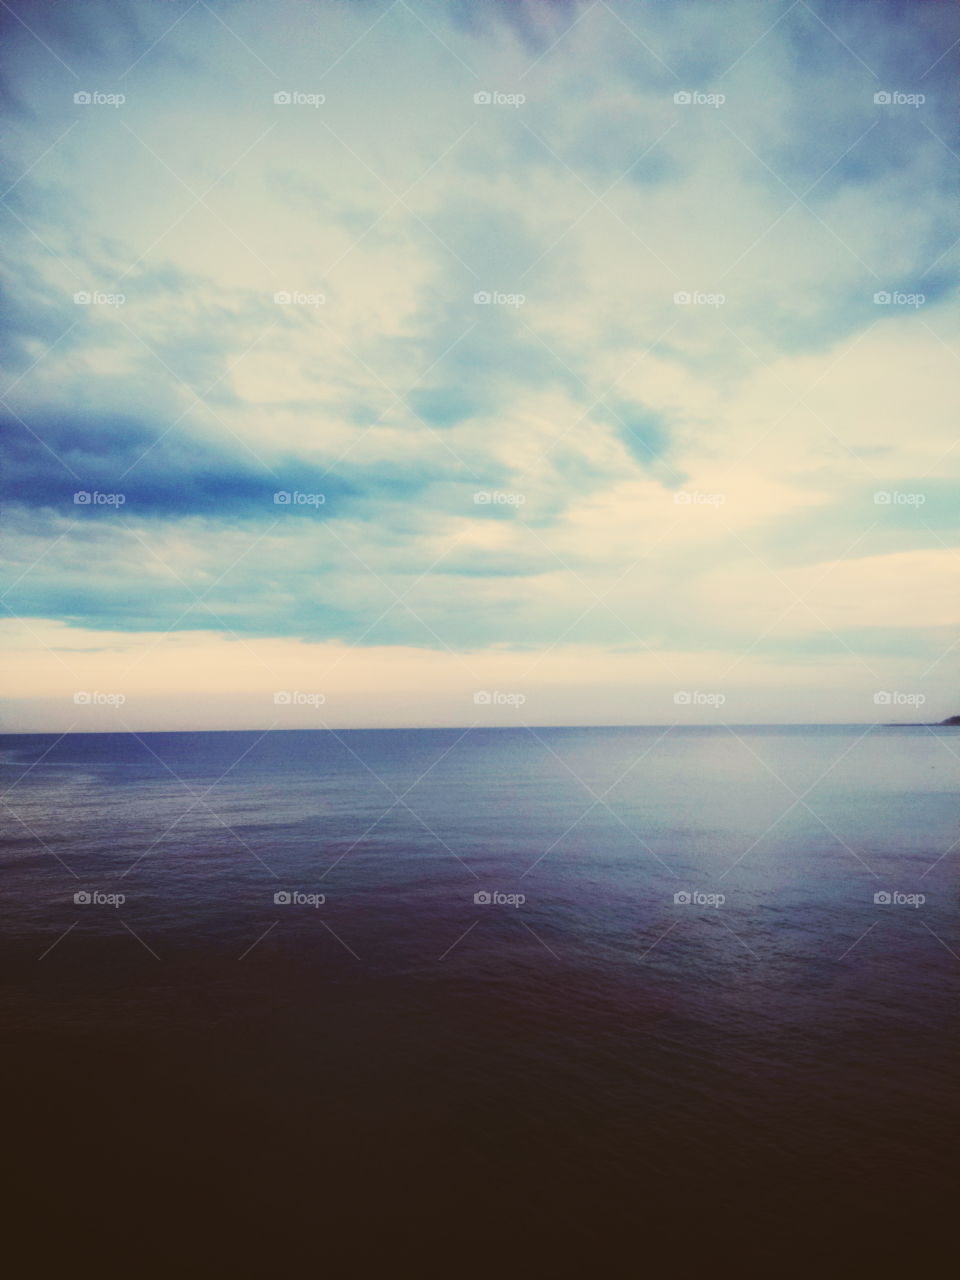 Calm. sea landscape